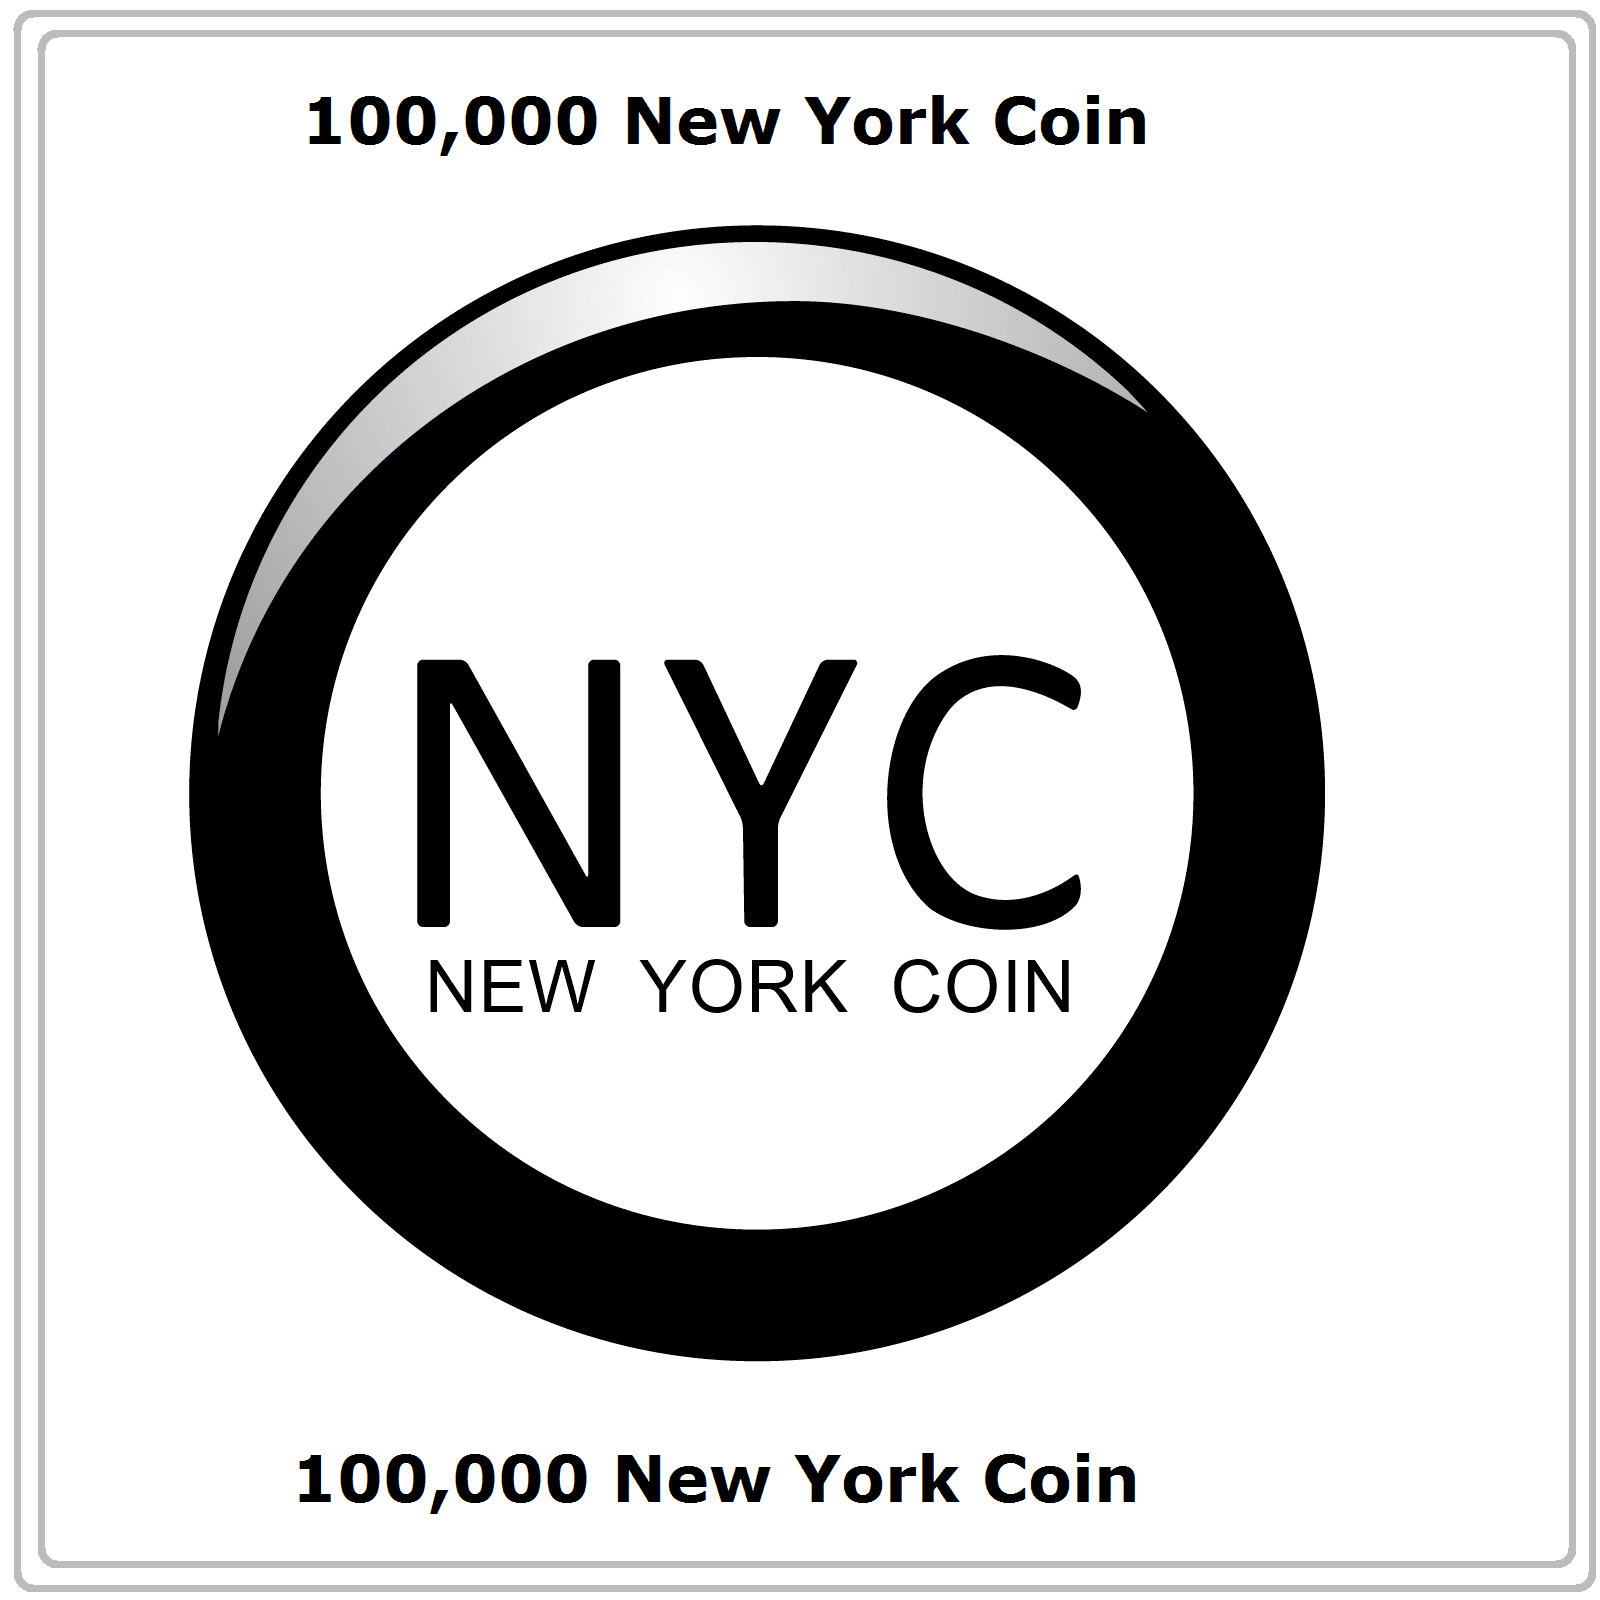 New York Coin (NYC) CRYPTO MINING